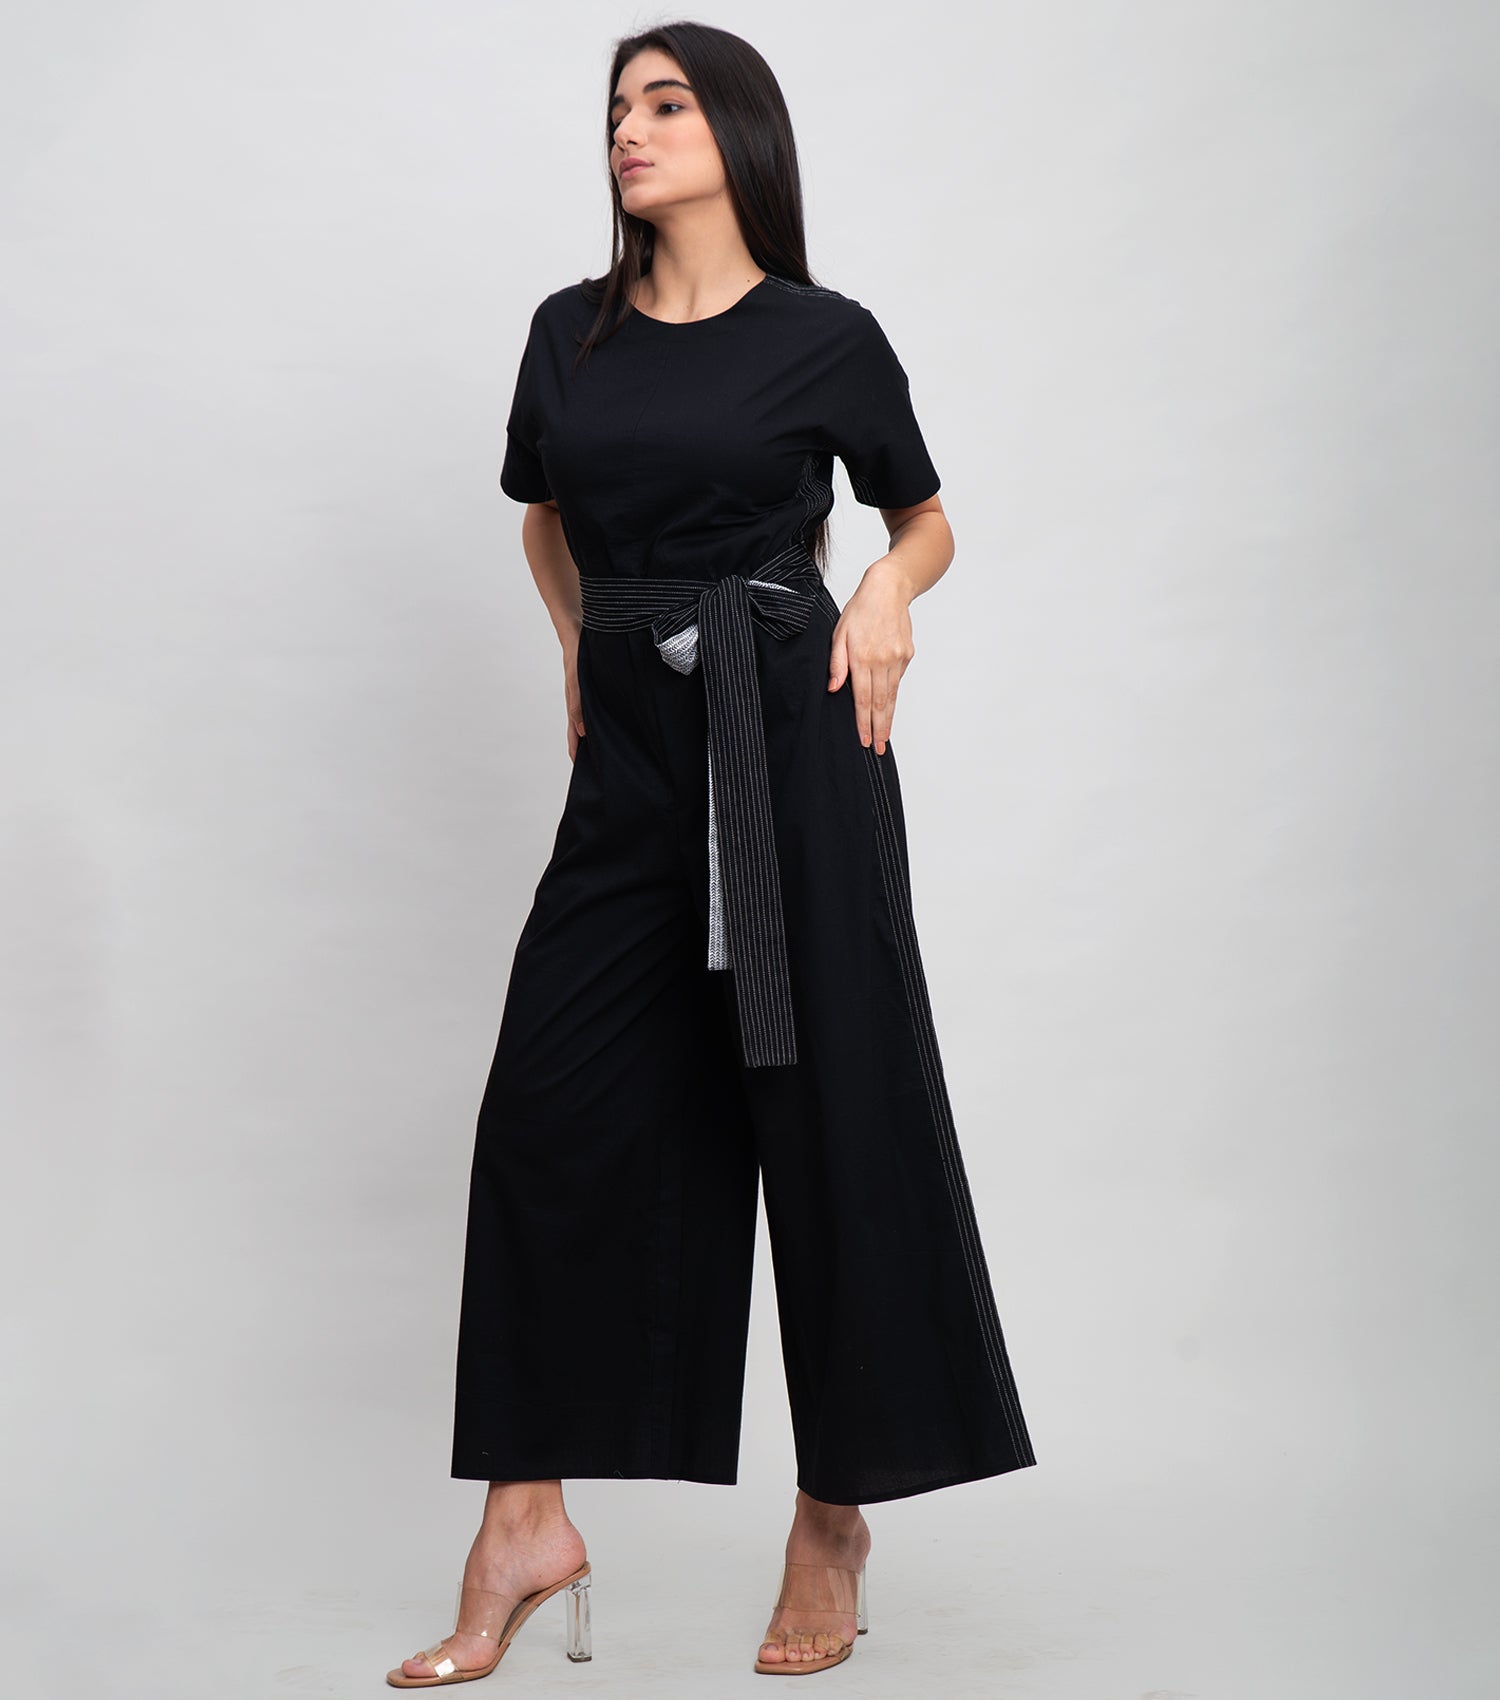 Black Cotton Jumpsuit With Stitch Line Detail